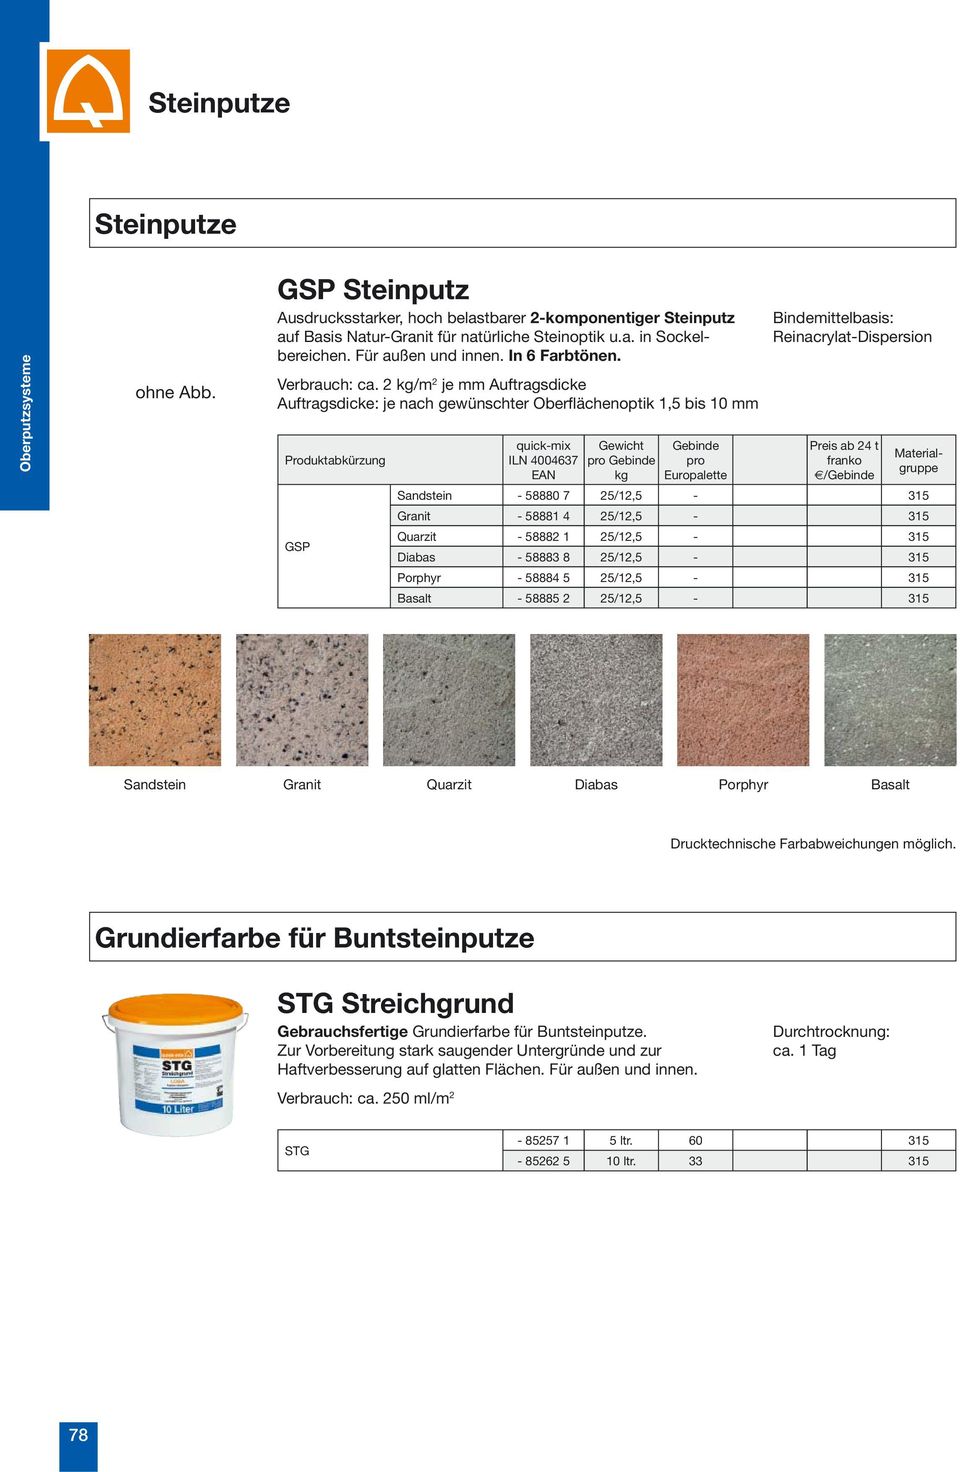 2 /m 2 je mm Auftragsdicke Auftragsdicke: je nach gewünschter Oberflächenoptik 1,5 bis 10 mm GSP Reinacrylat-Dispersion / Sandstein - 58880 7 25/12,5-315 Granit - 58881 4 25/12,5-315 Quarzit - 58882